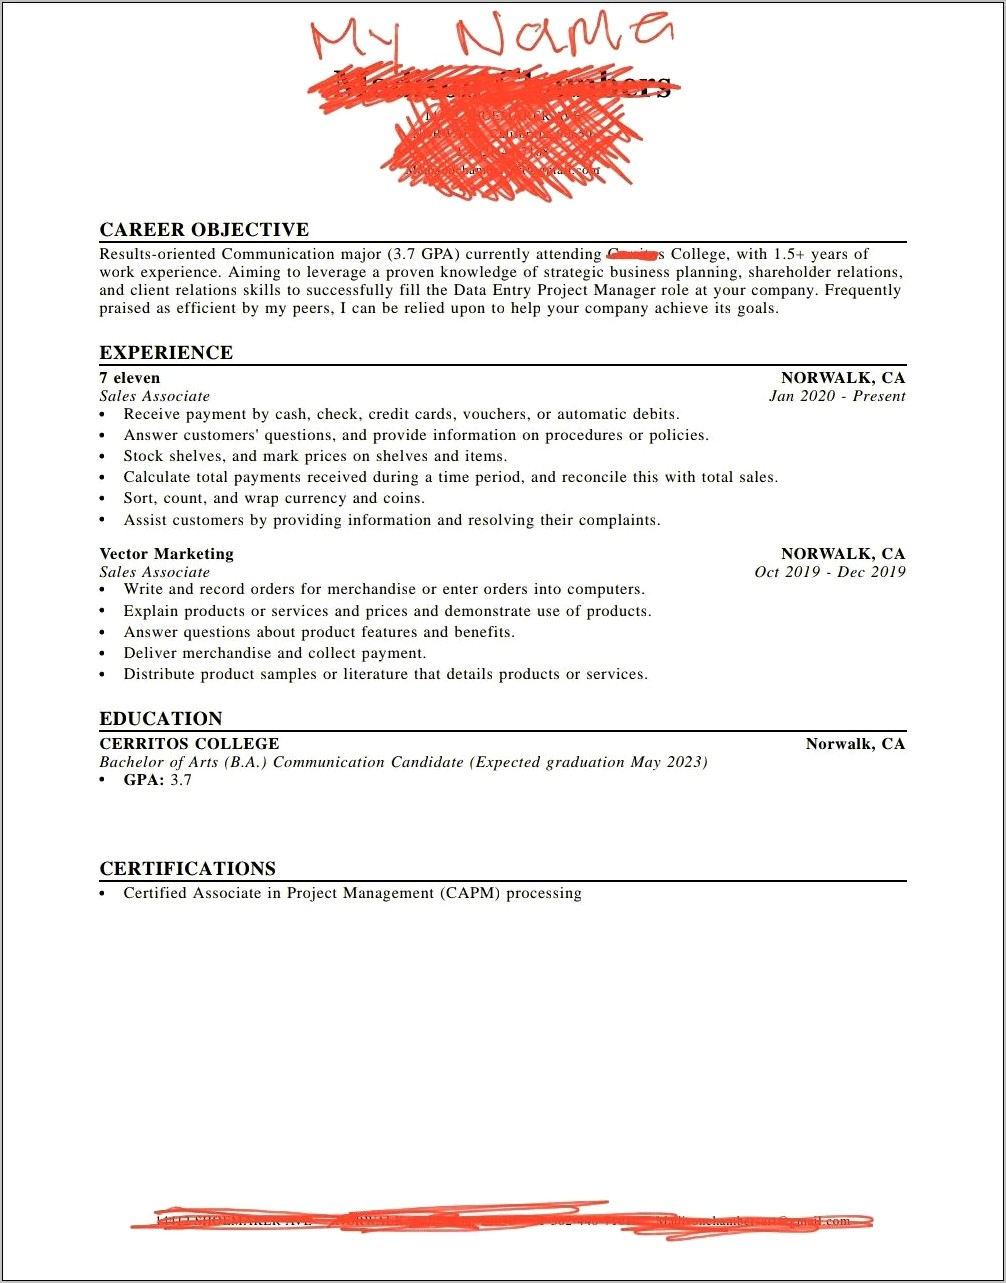 Job Description For Mlm Business Owner Resume